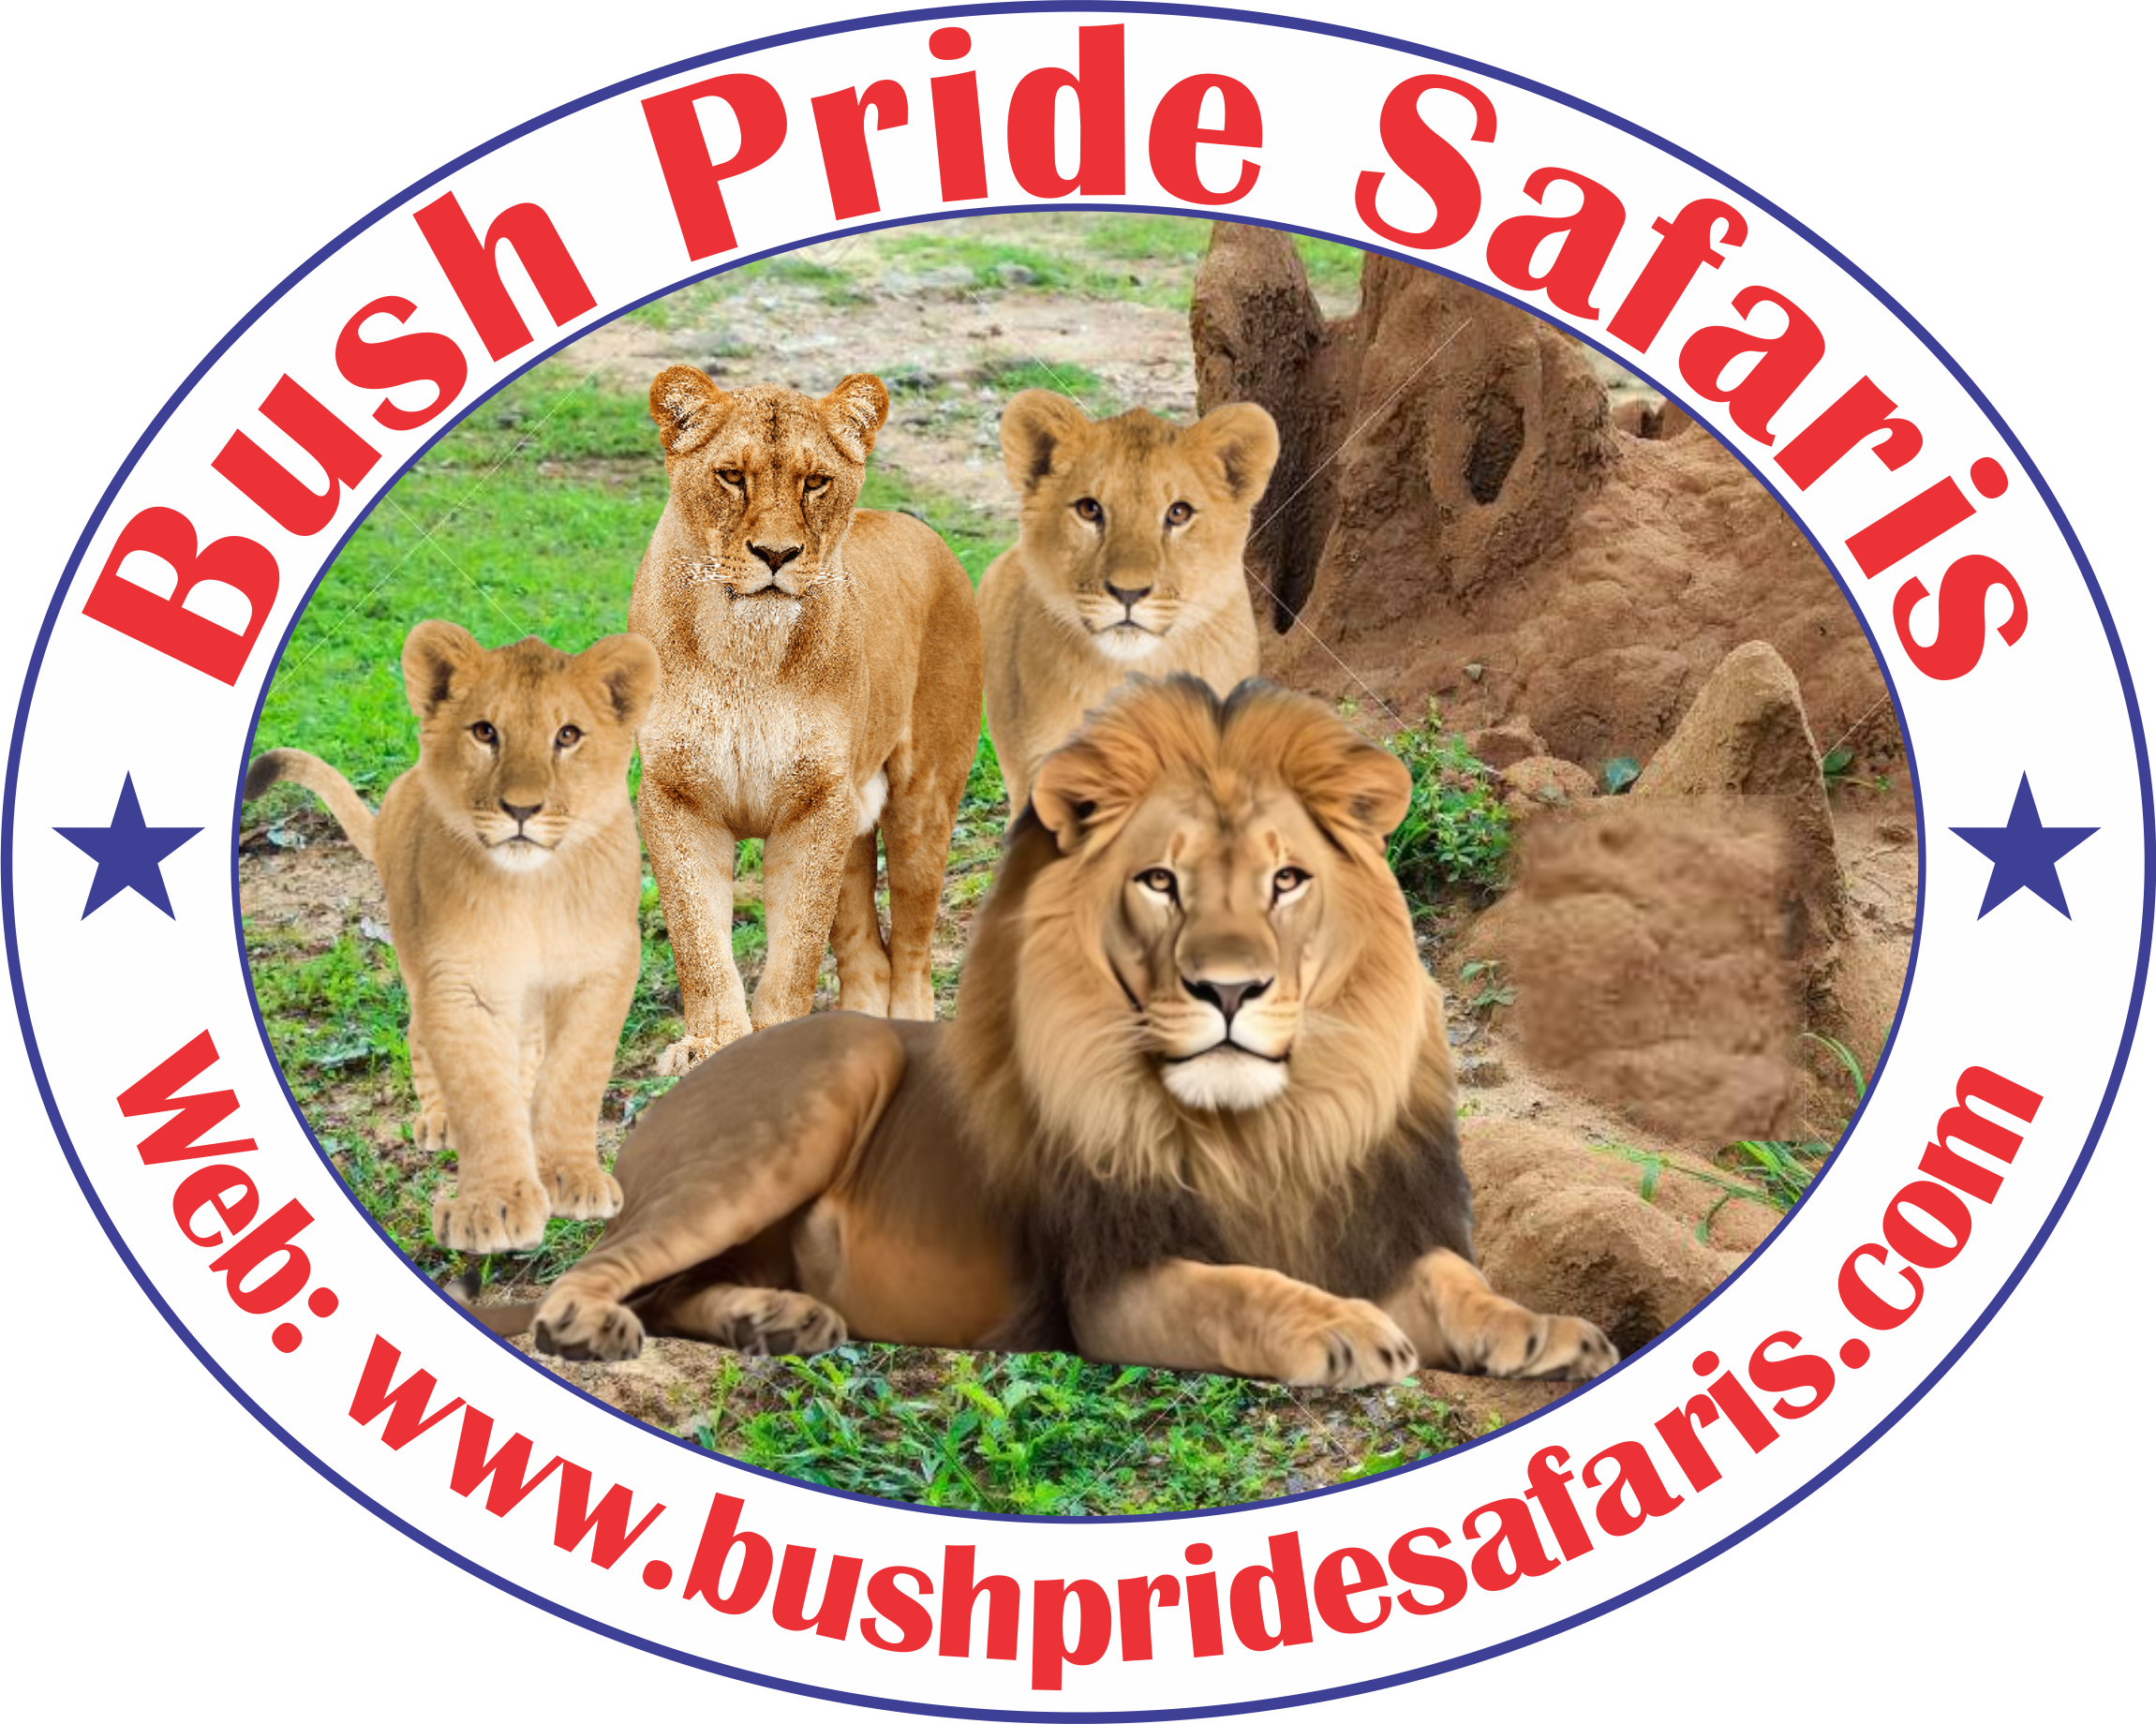 Bush Pride Safaris